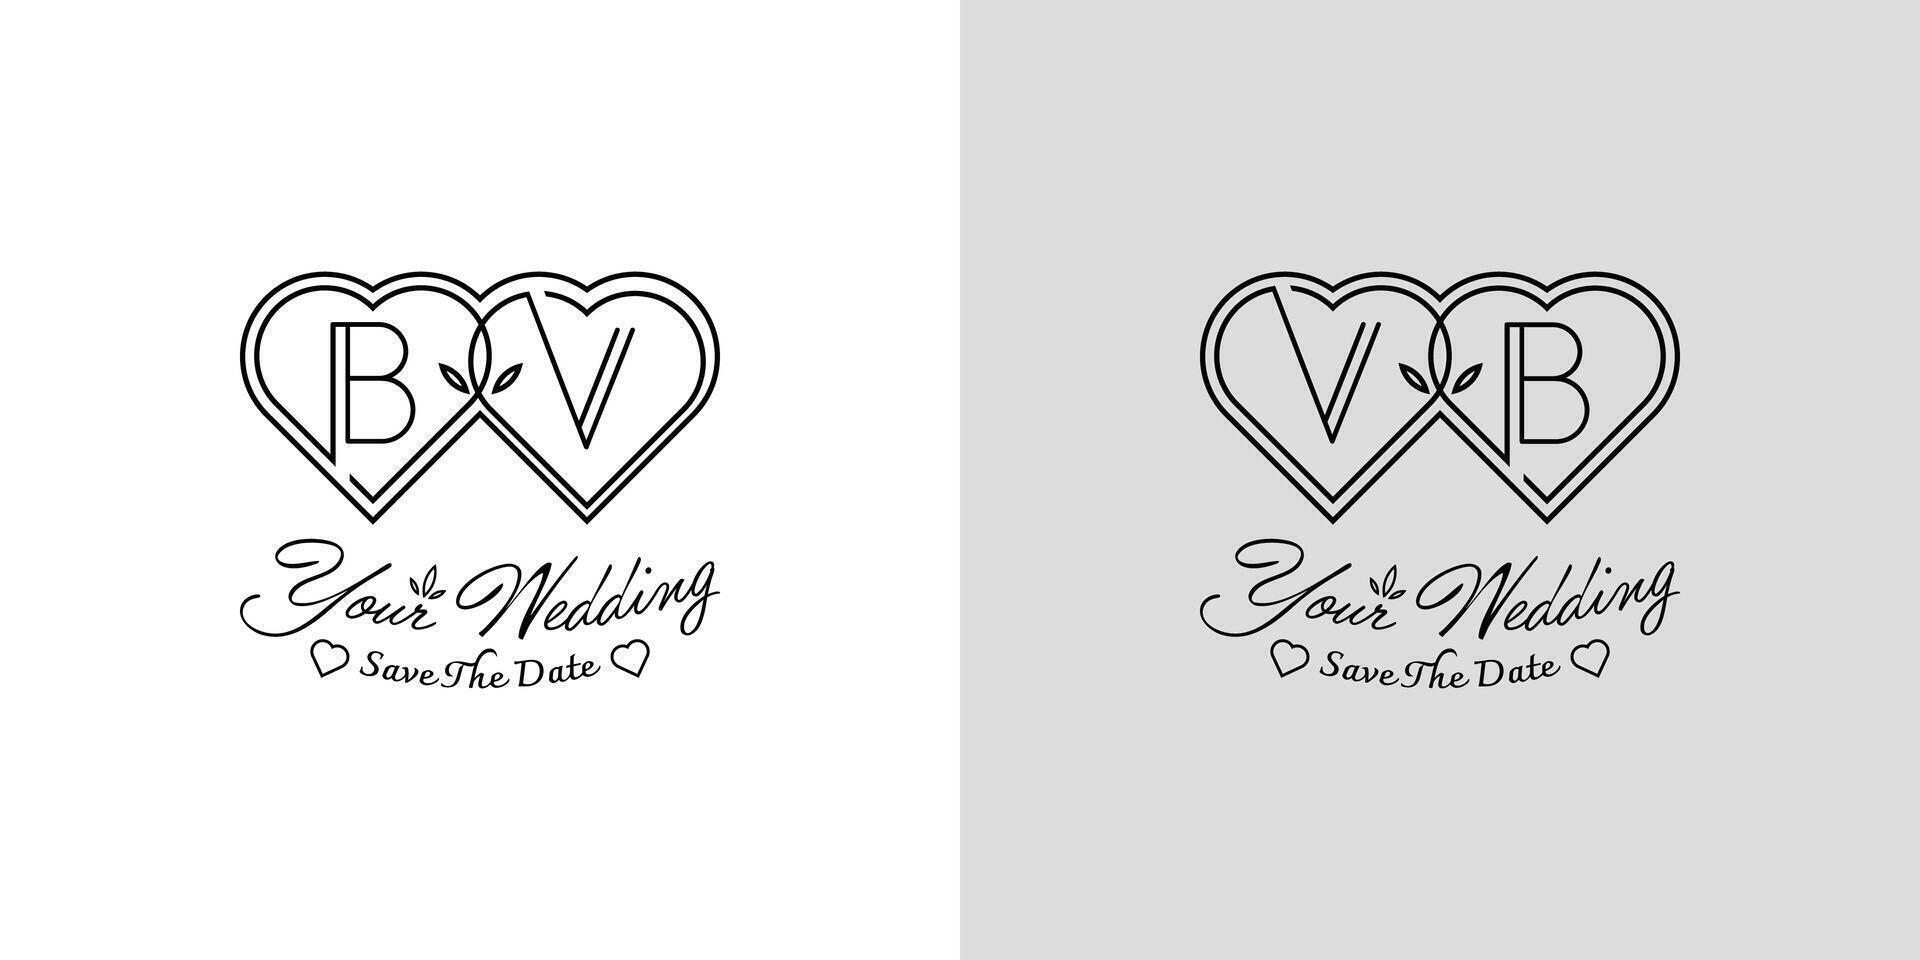 brev bv och vb bröllop kärlek logotyp, för par med b och v initialer vektor